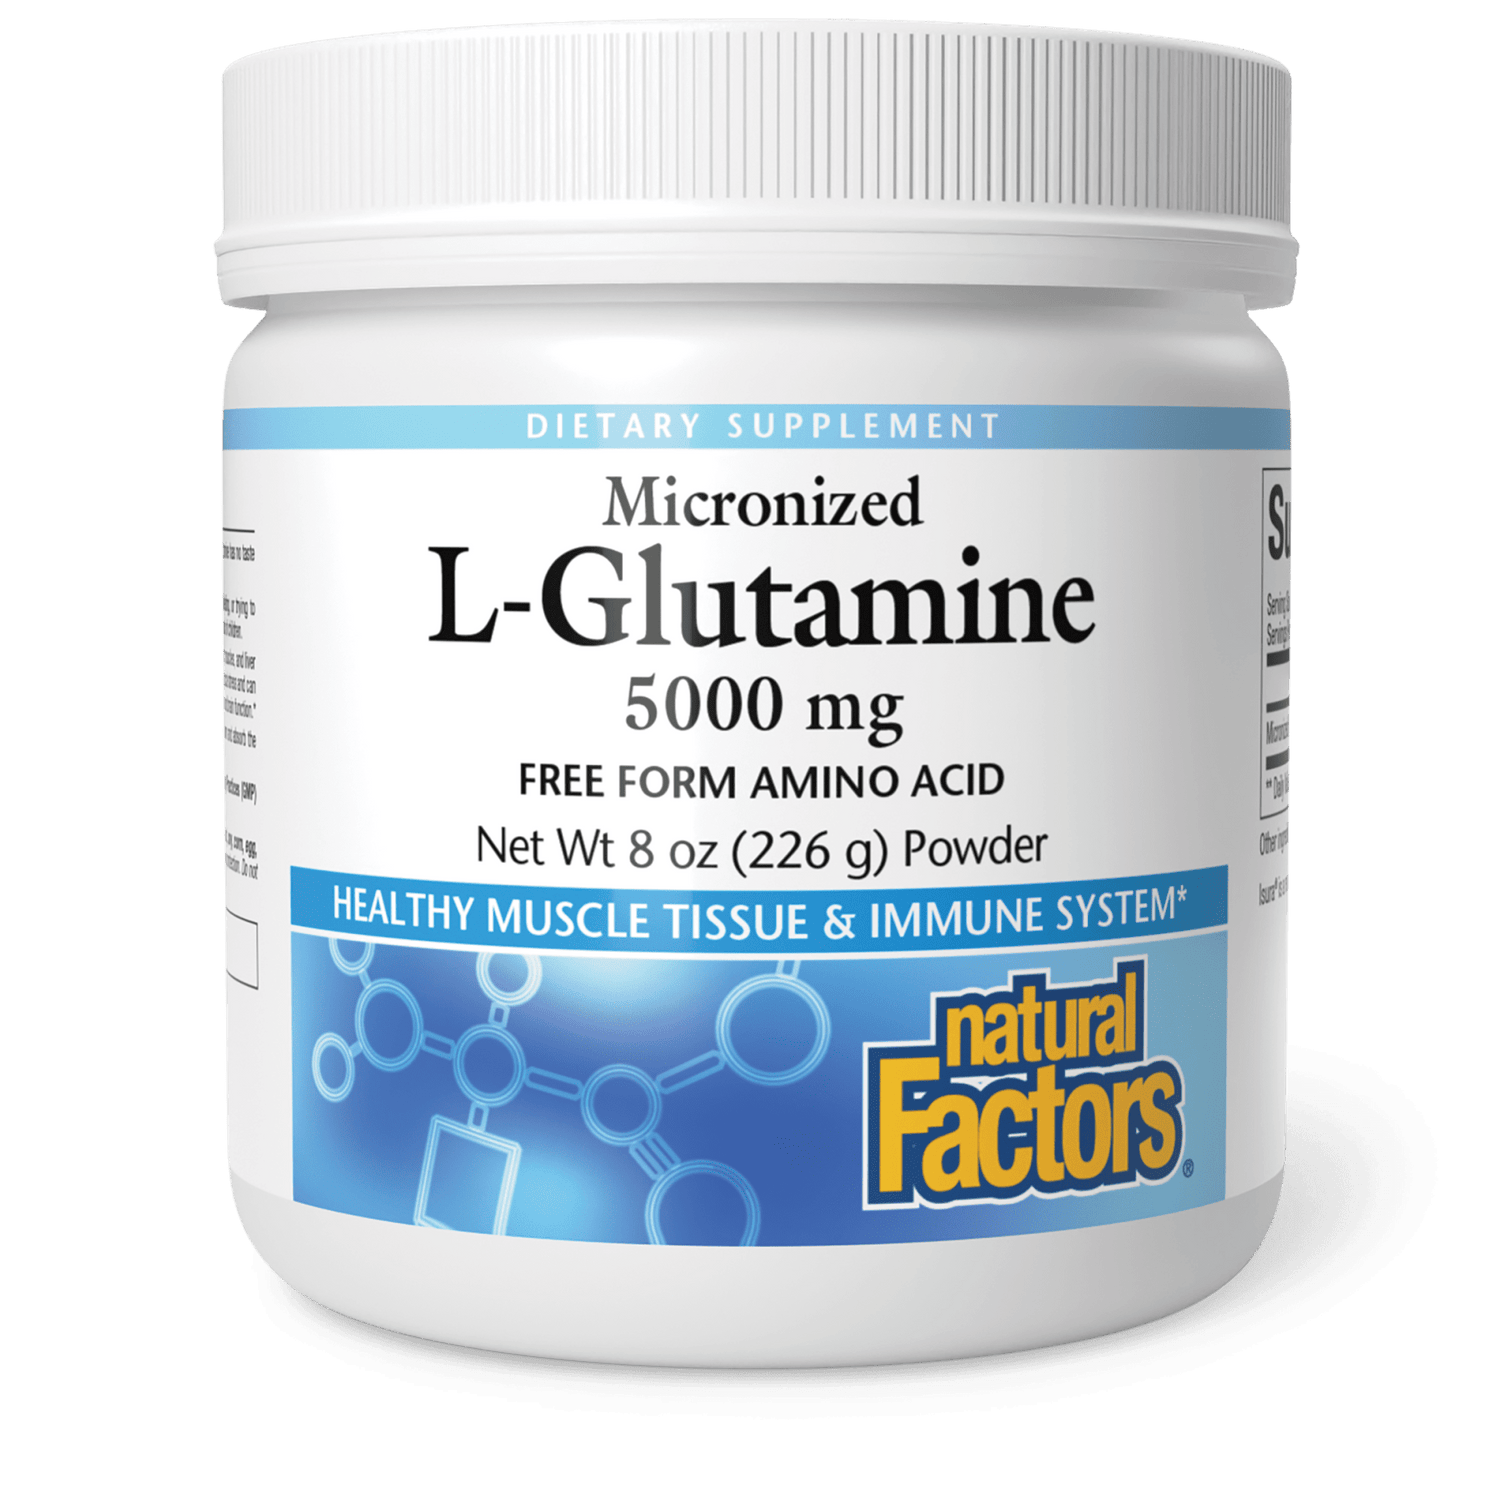 Glutamine supplementation